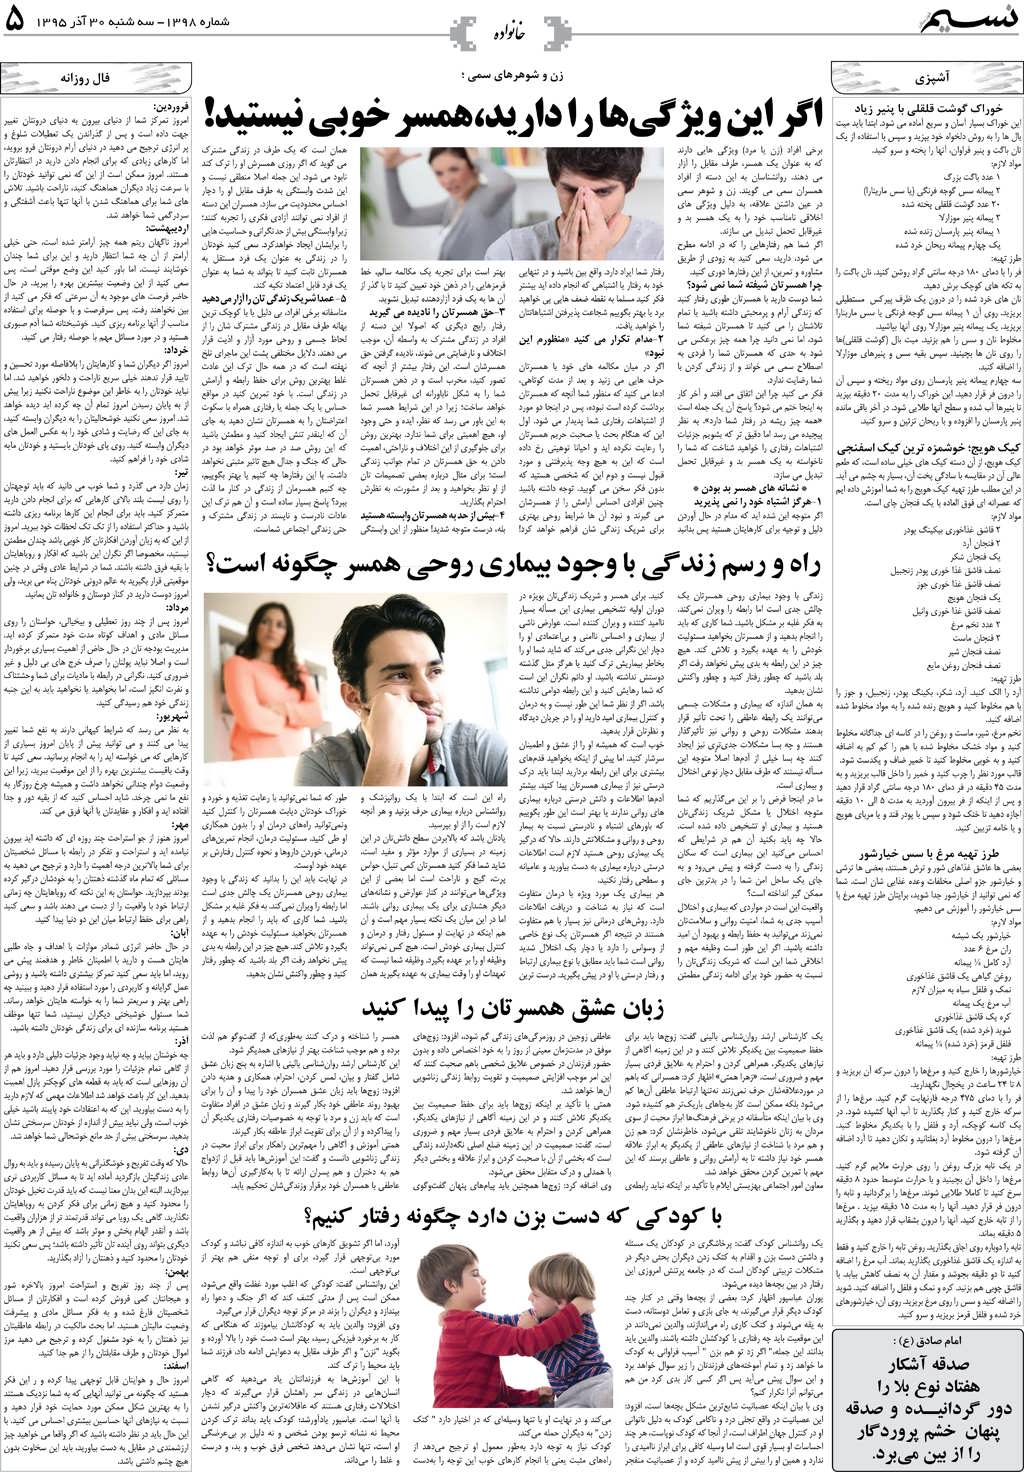 صفحه خانواده روزنامه نسیم شماره 1398